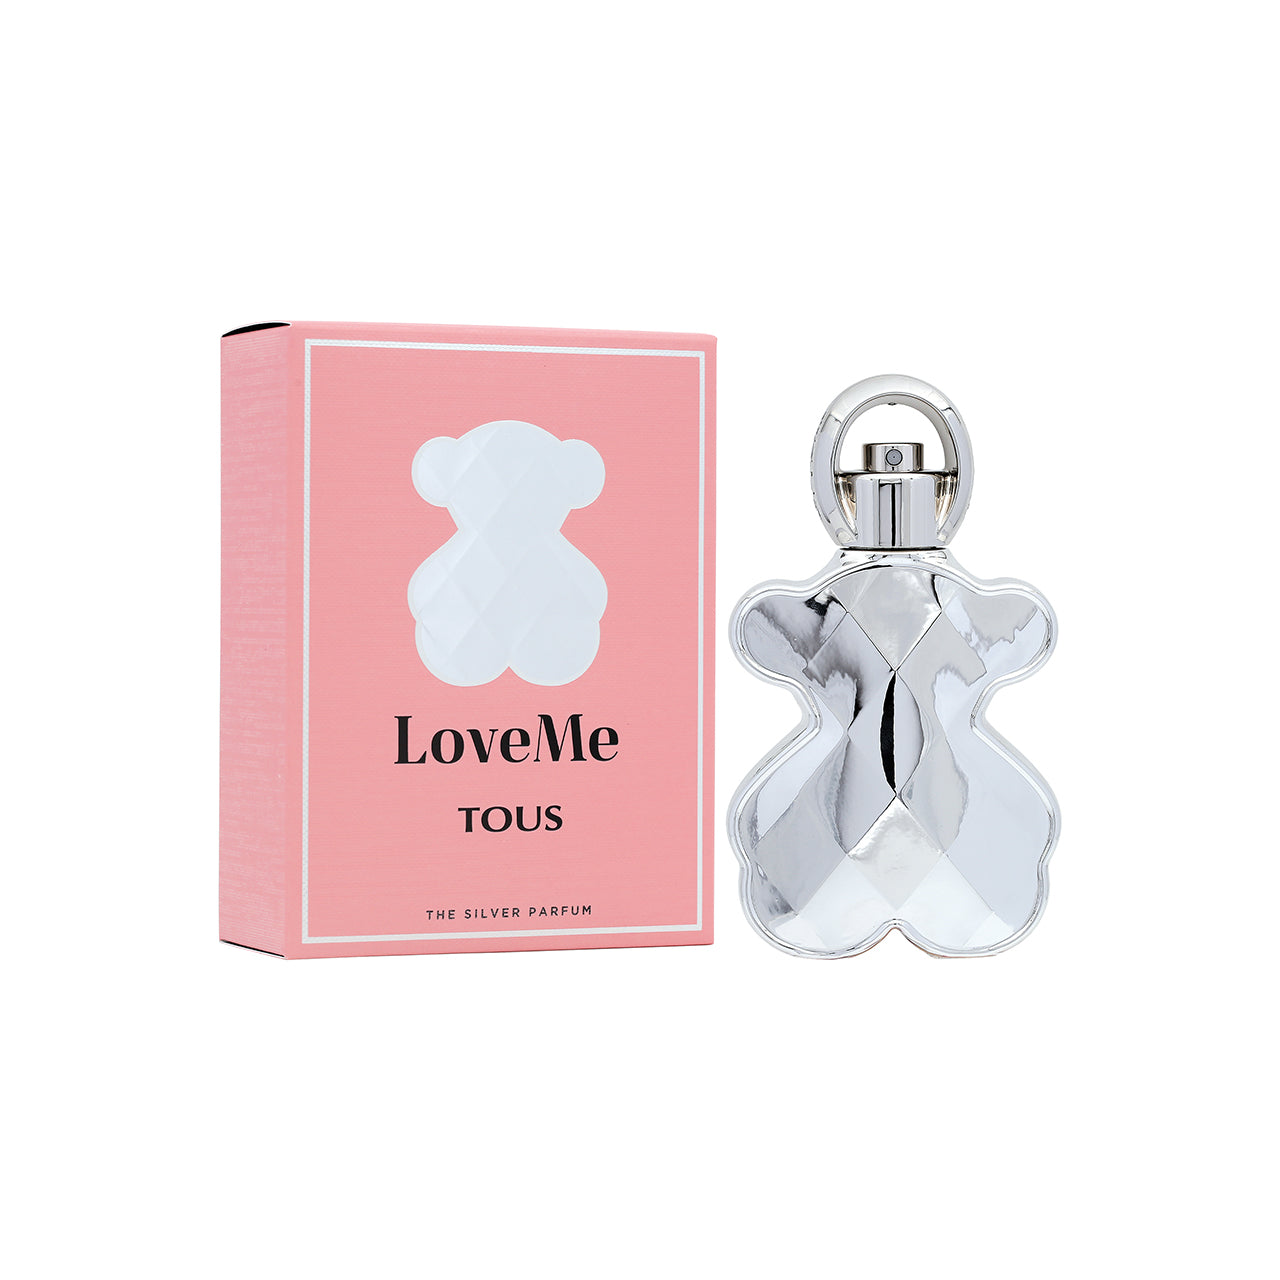 Tous LoveMe The Silver Parfum 50ml